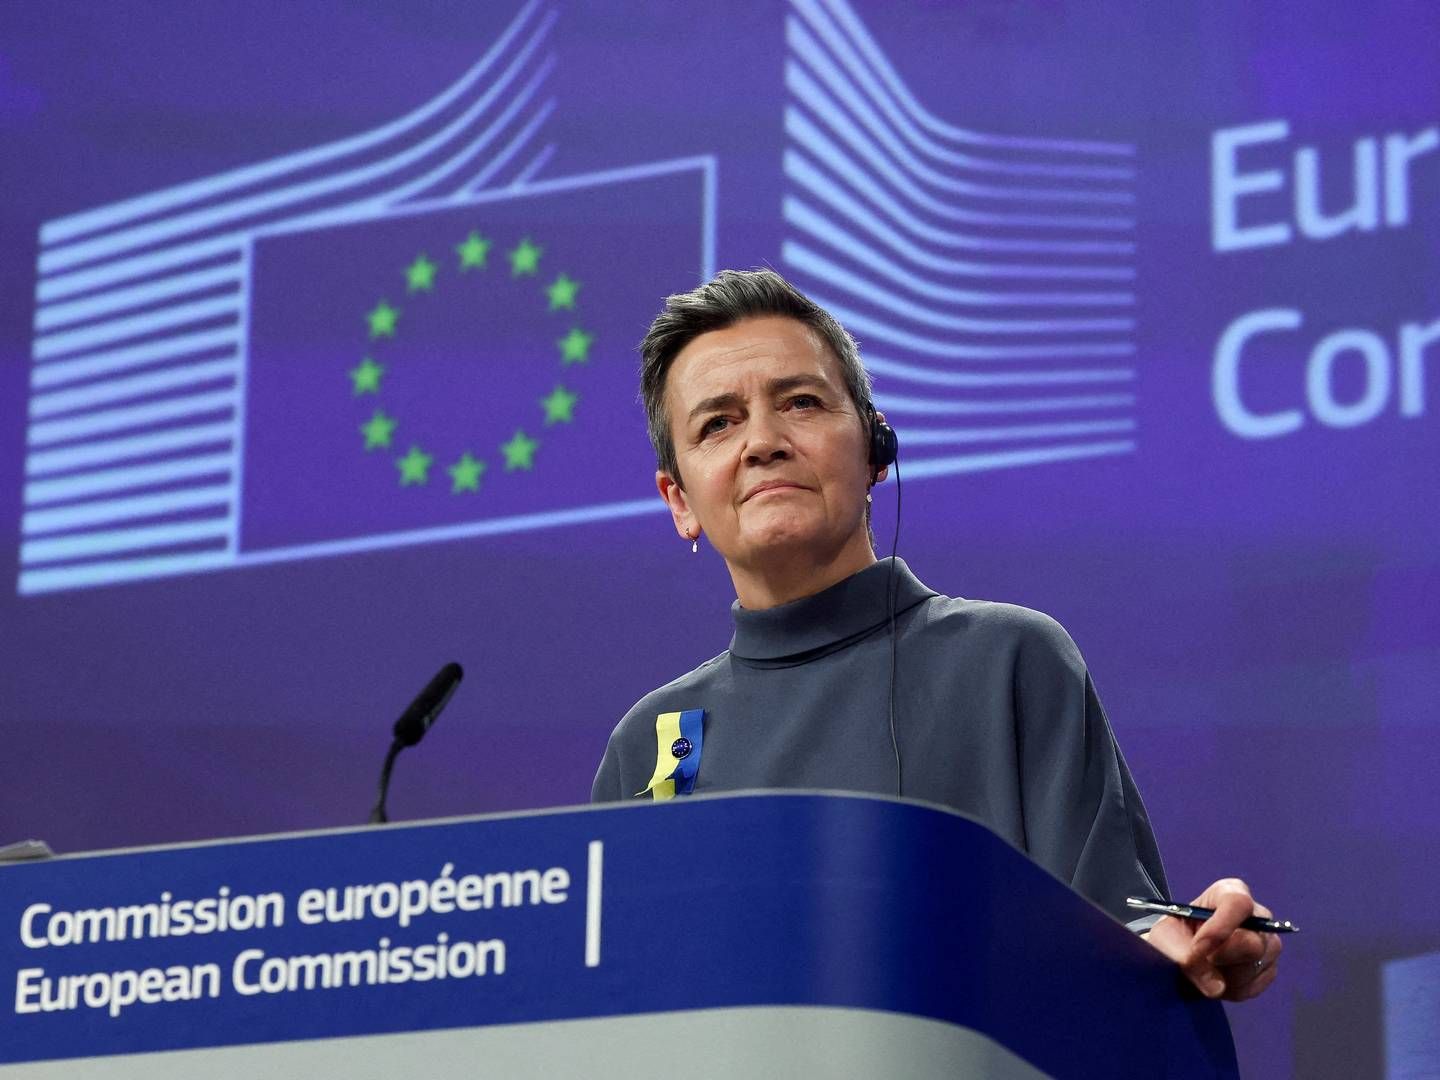 "Vi er kommet meget tættere på forretningsmodellen hos de virksomheder, som især er i søgelyset,” siger Margrethe Vestager, om ny EU-lov. | Photo: Yves Herman